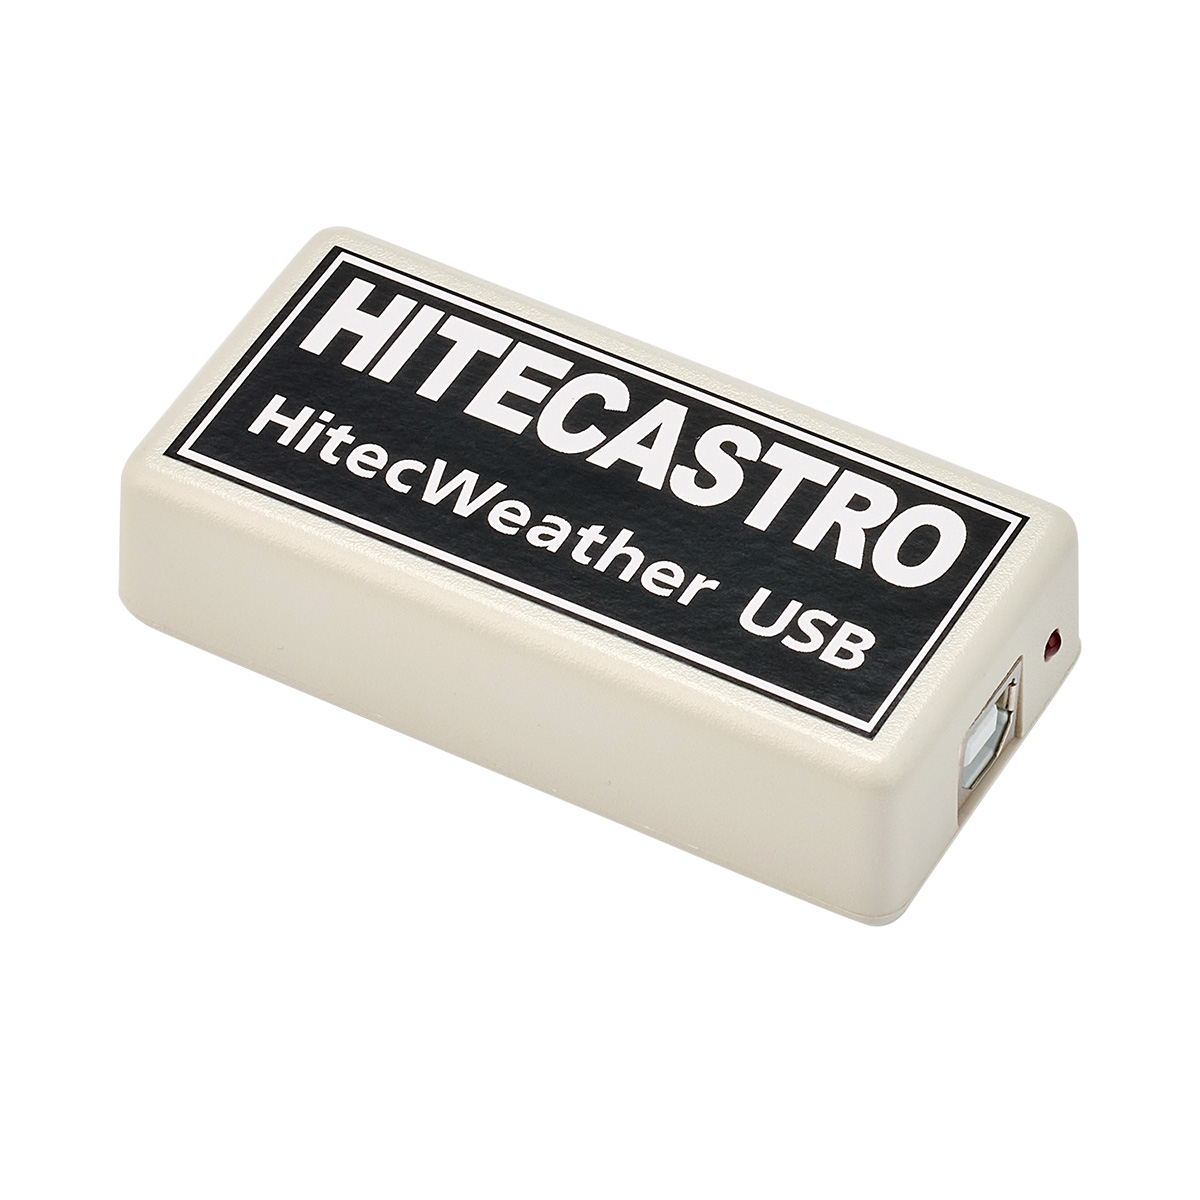 HiTec Astro Weather USB